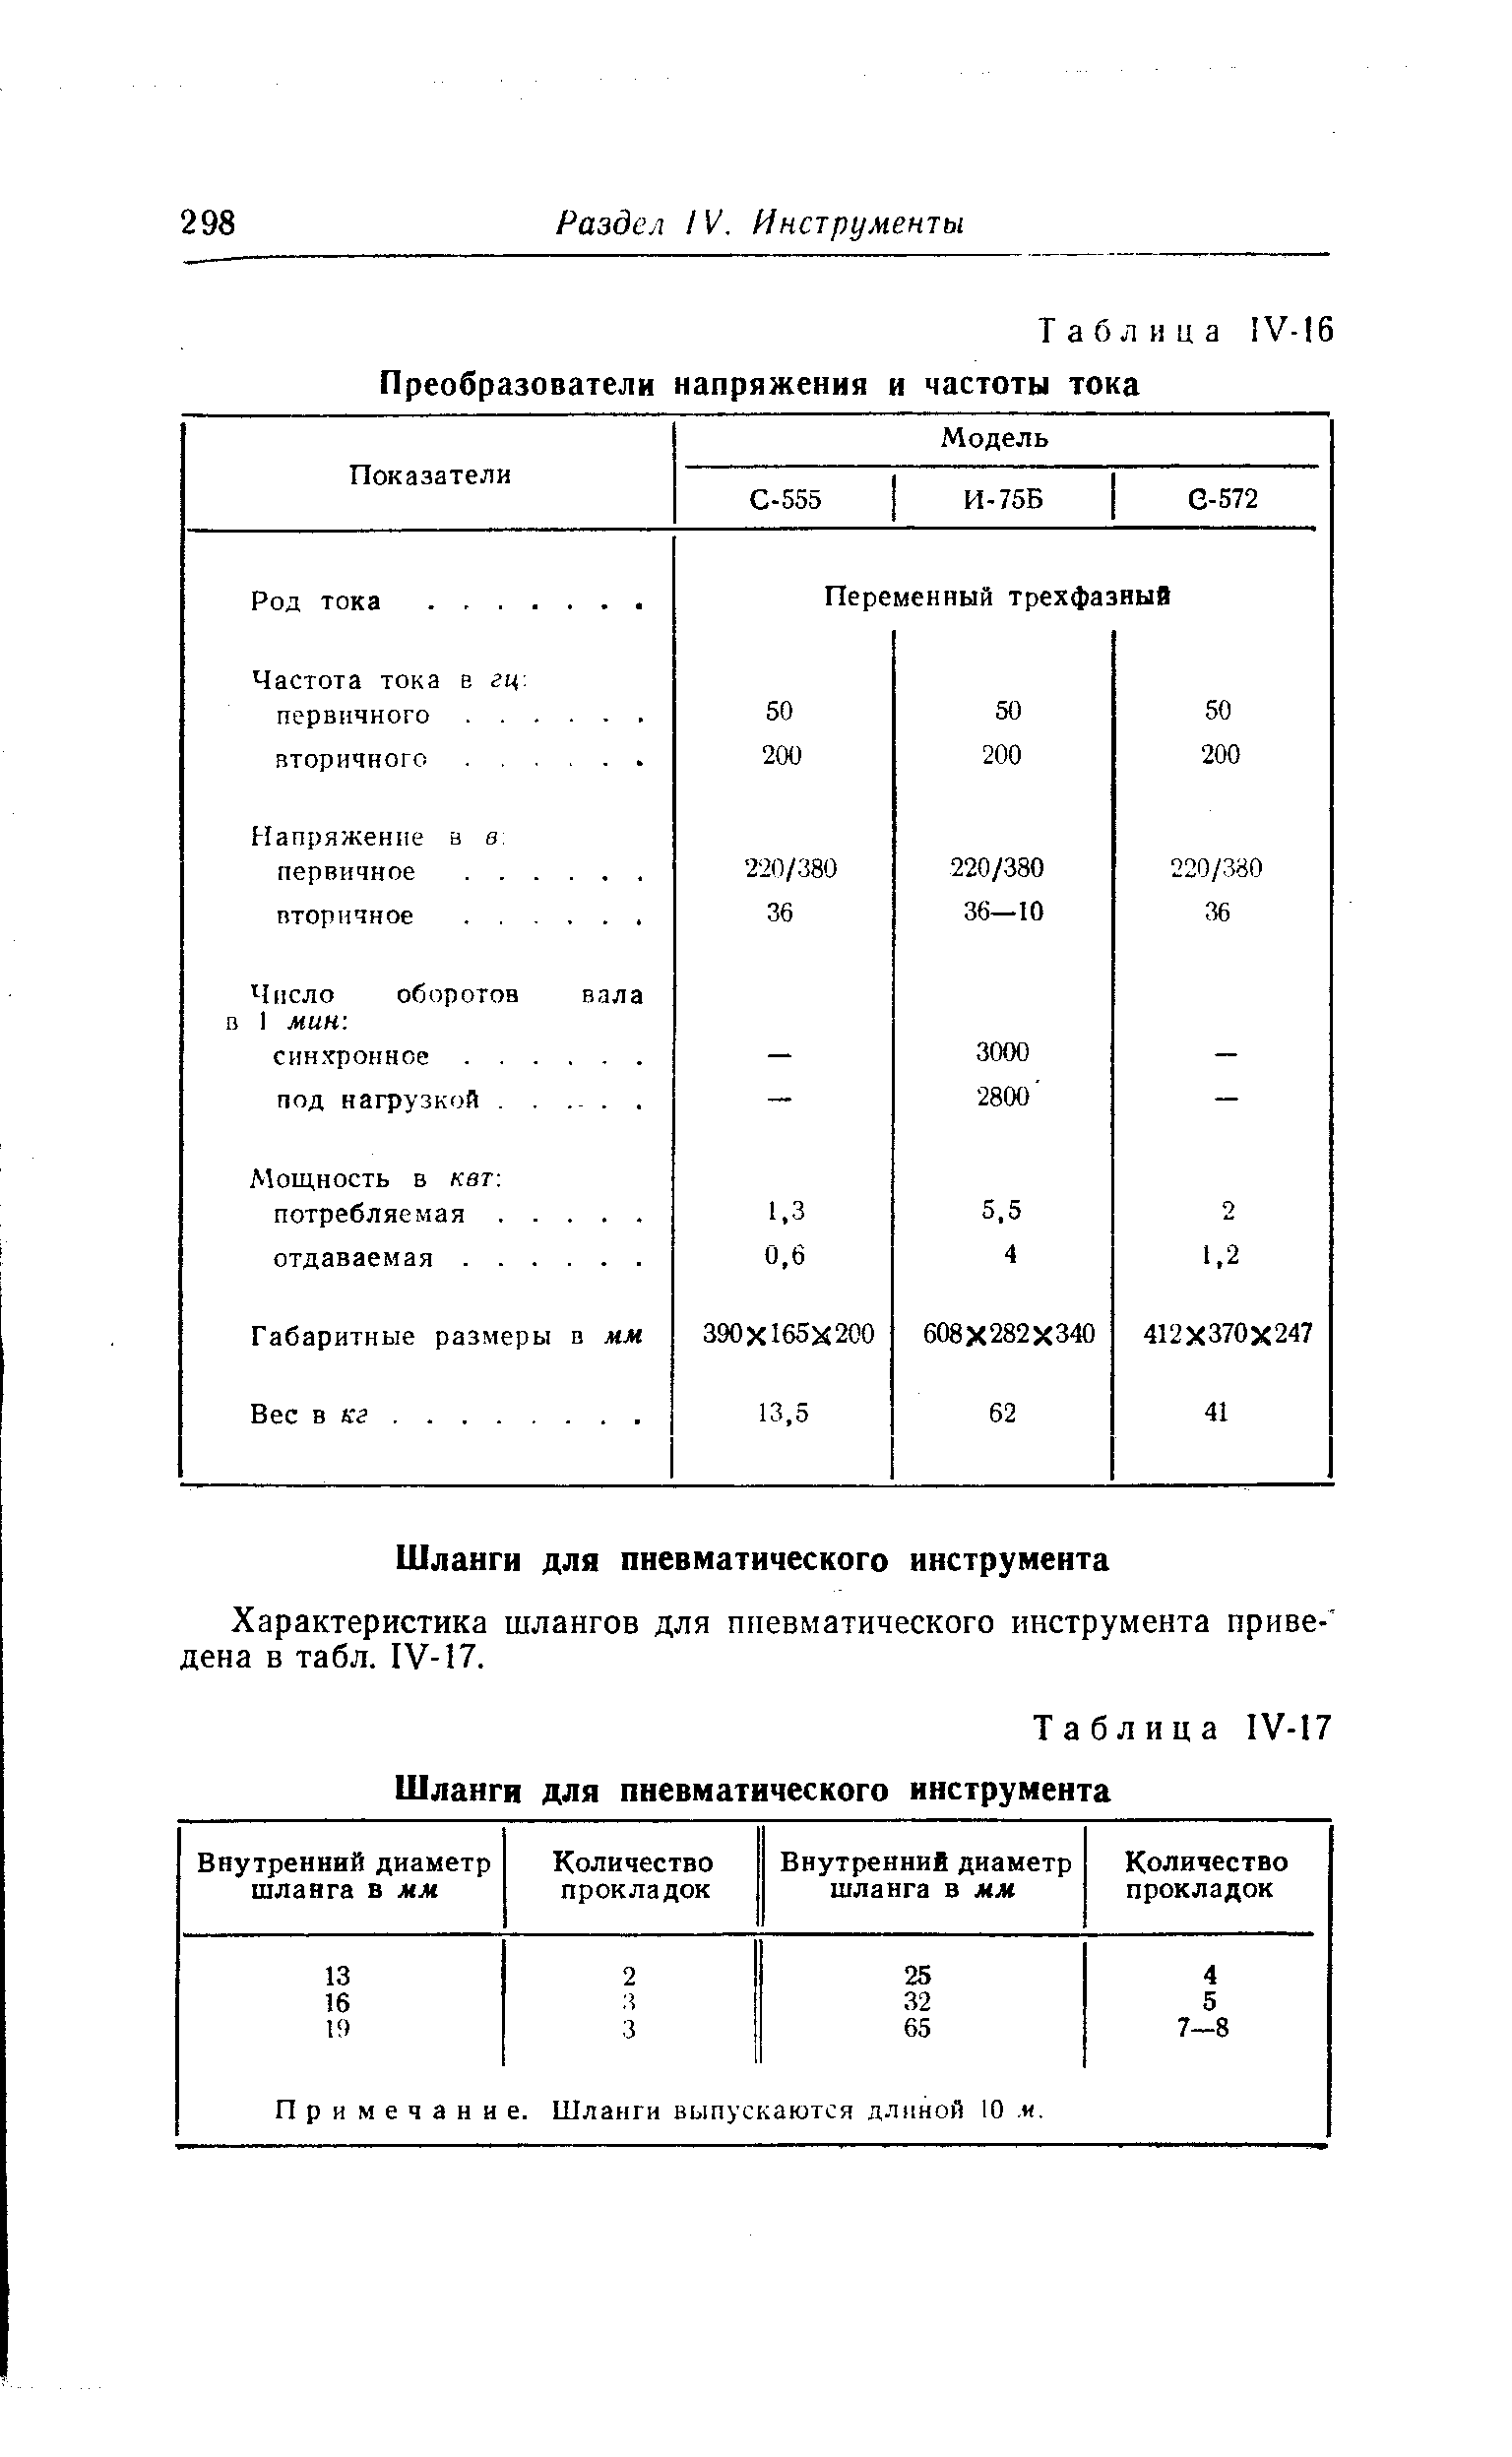 Таблица 1У-17 Шланги для пневматического инструмента
